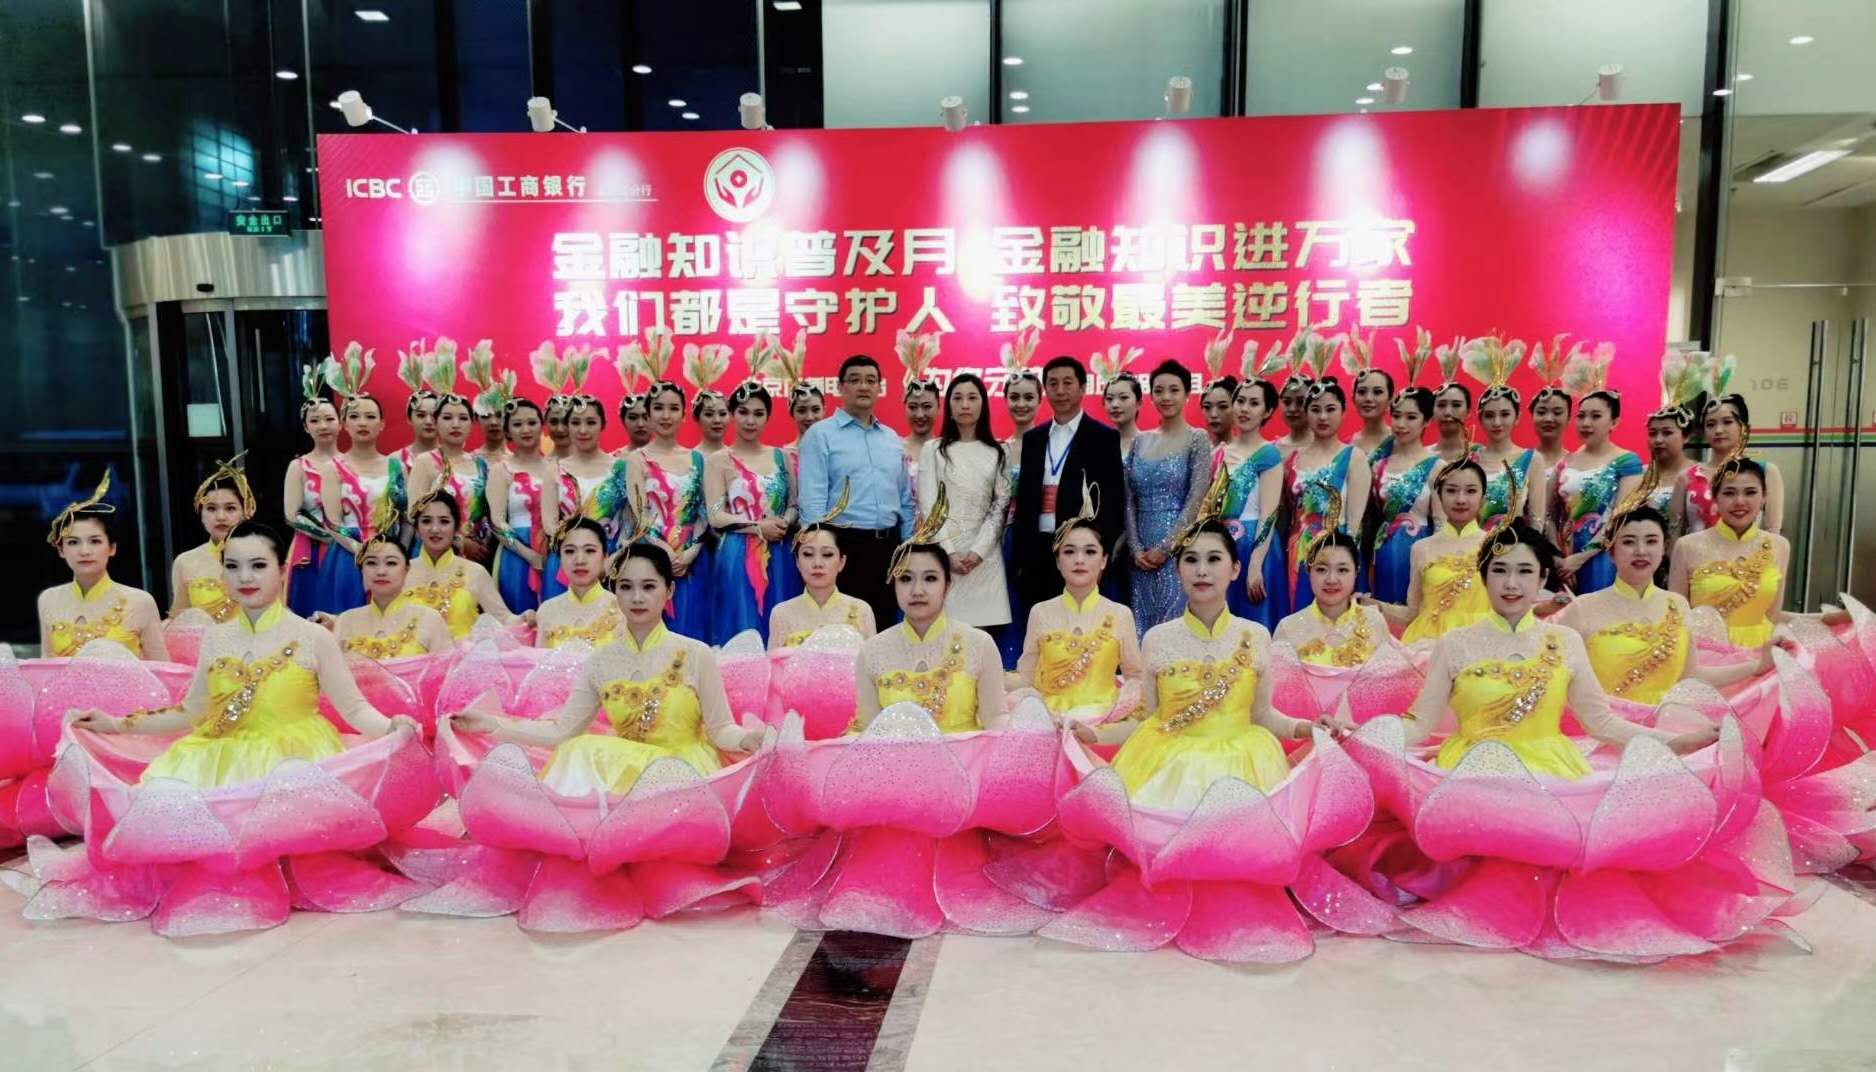 北京广播电视台《为你守护》国庆特别节目整体化妆造型